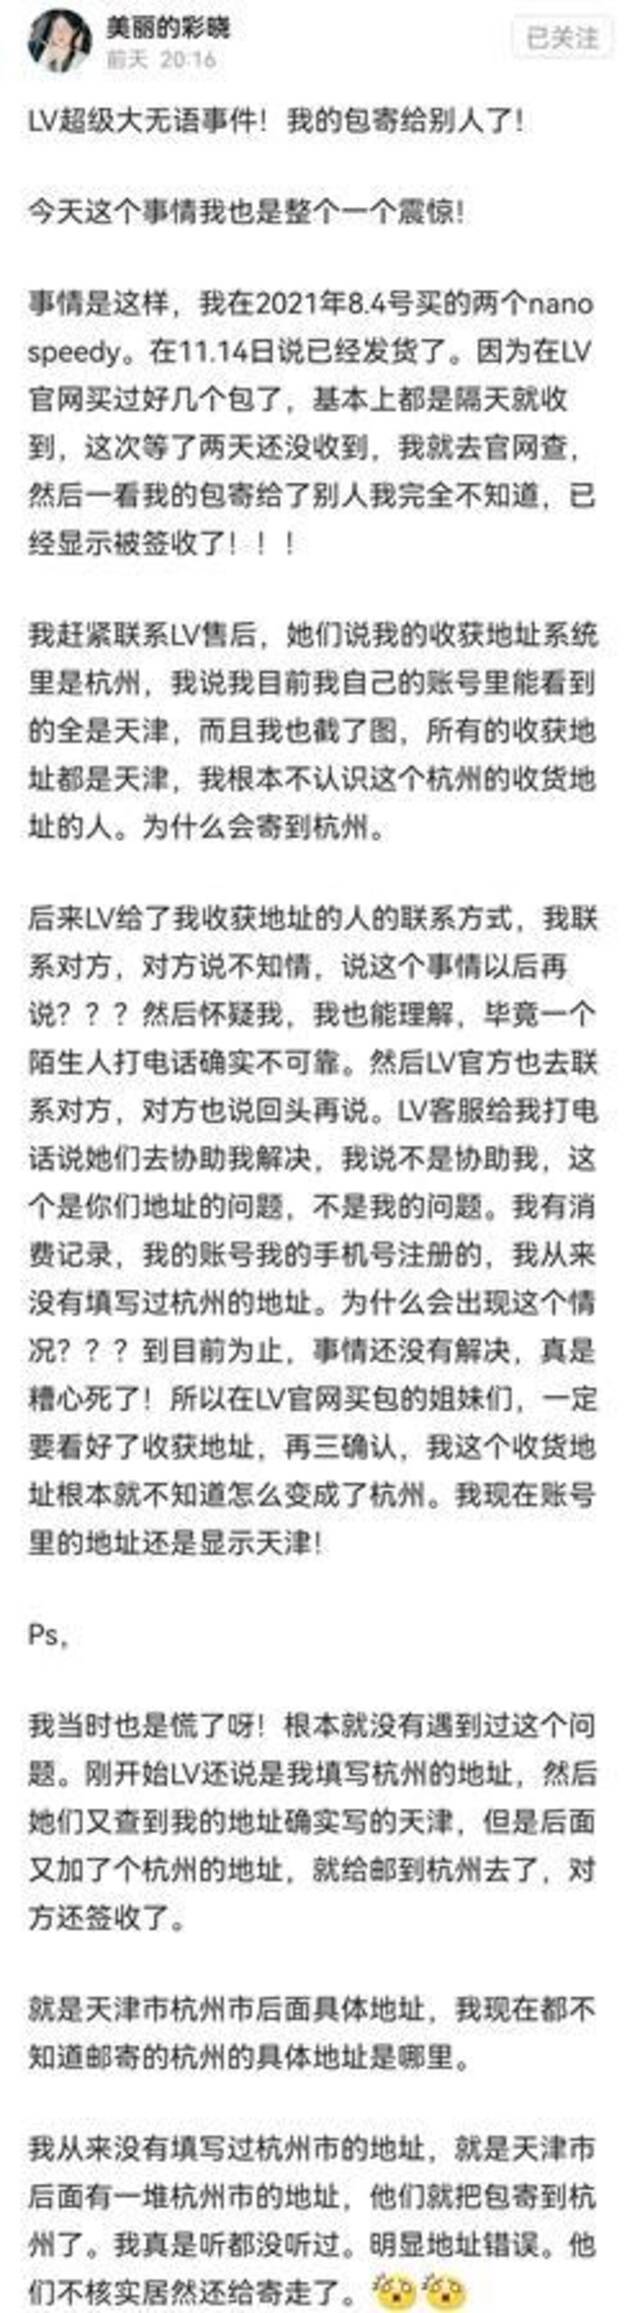 杭州女子莫名收到两个LV包 三个求退还的电话让她犯难